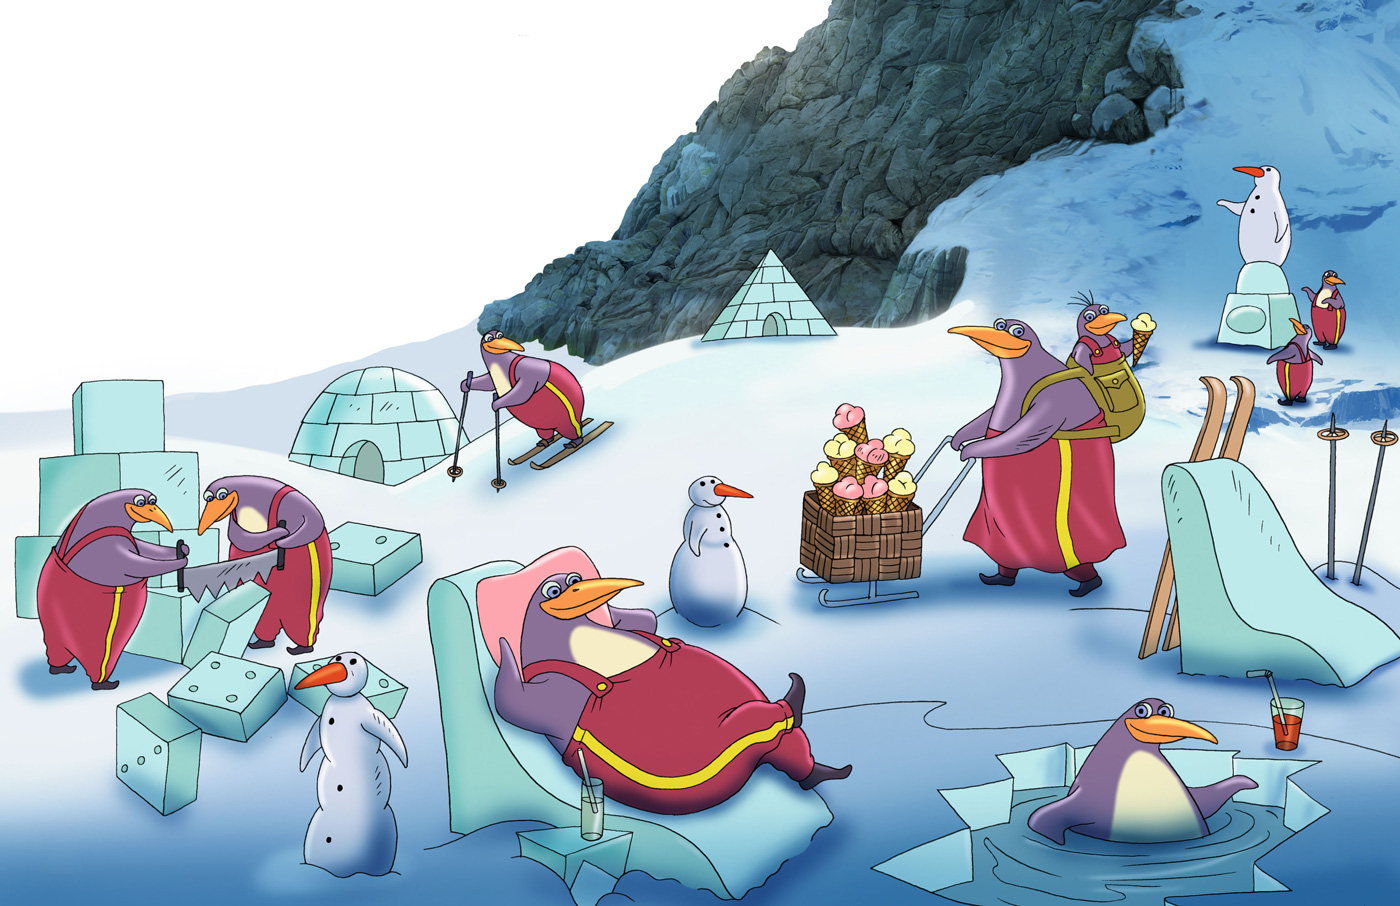 Saar, millel on palju pingviine. Kaks neist saevad suurest jääkuubikust tükke. Üks sõidab suuskadega mäest alla. Üks ujub jääaugus ja joob külma jooki. Üks pingviiniema kannab seljas seljakotti, milles on väike jäätist sööv pingviinipoeg. Pingviiniema lükkab enda ees suurt käru, mis on jäätist täis.